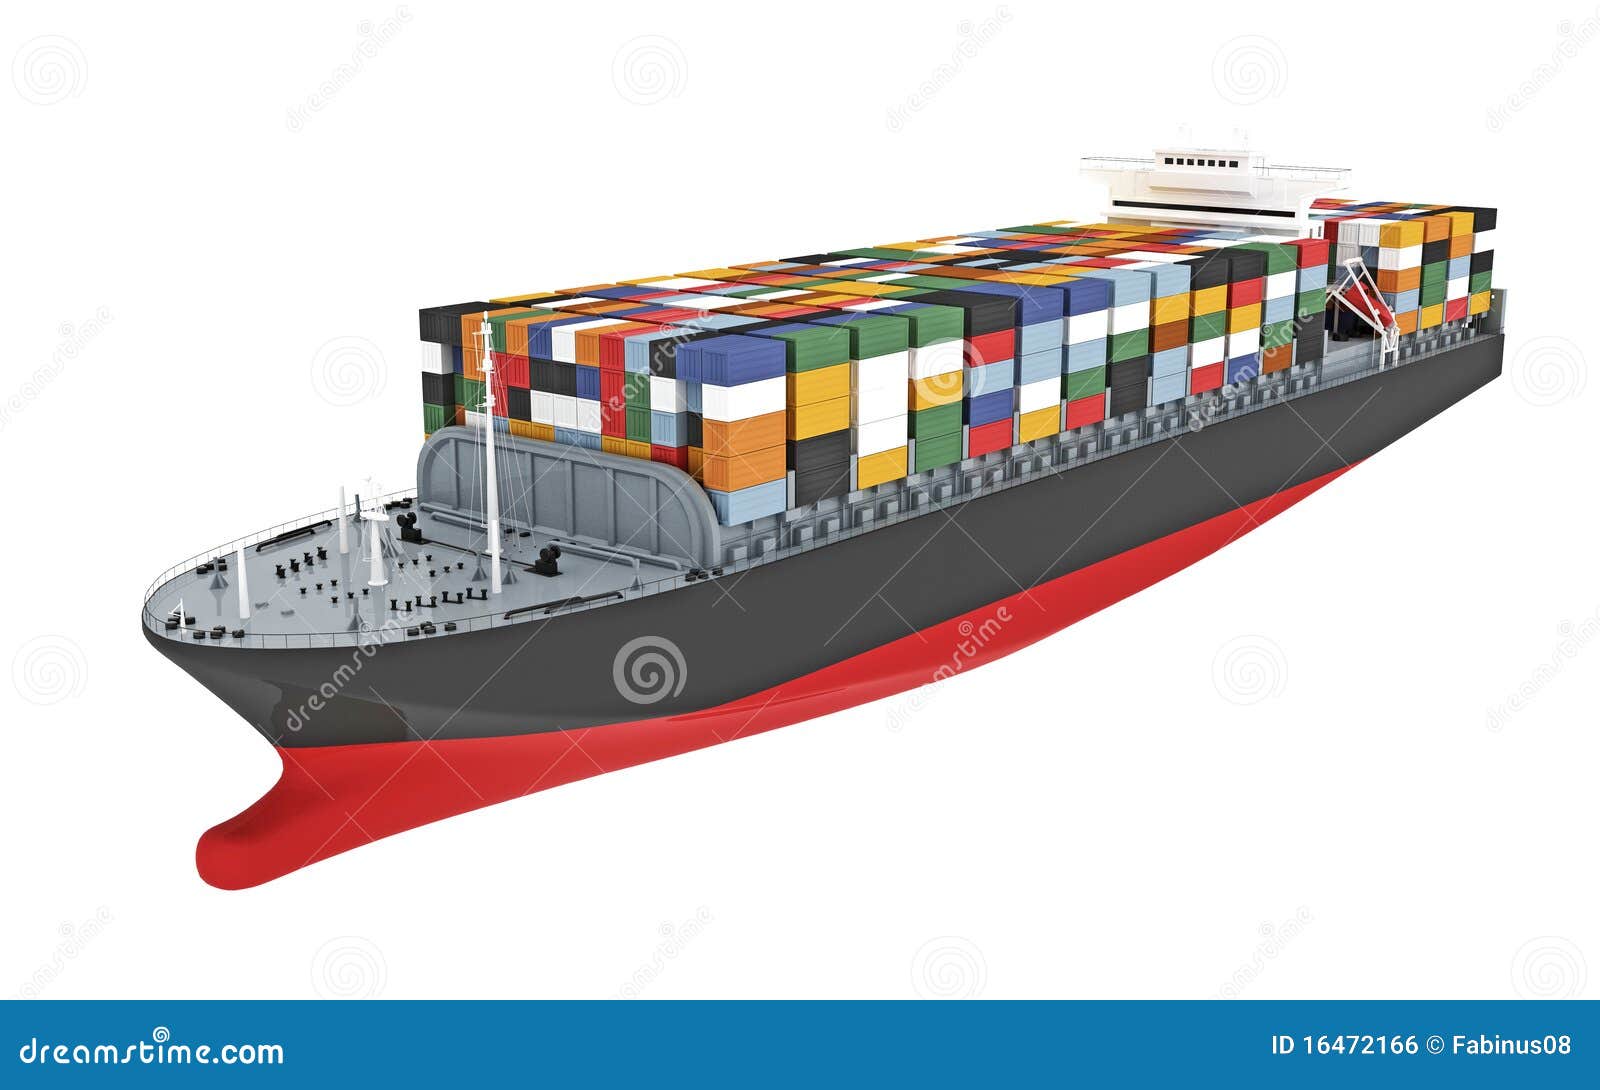 clipart cargo ship - photo #17